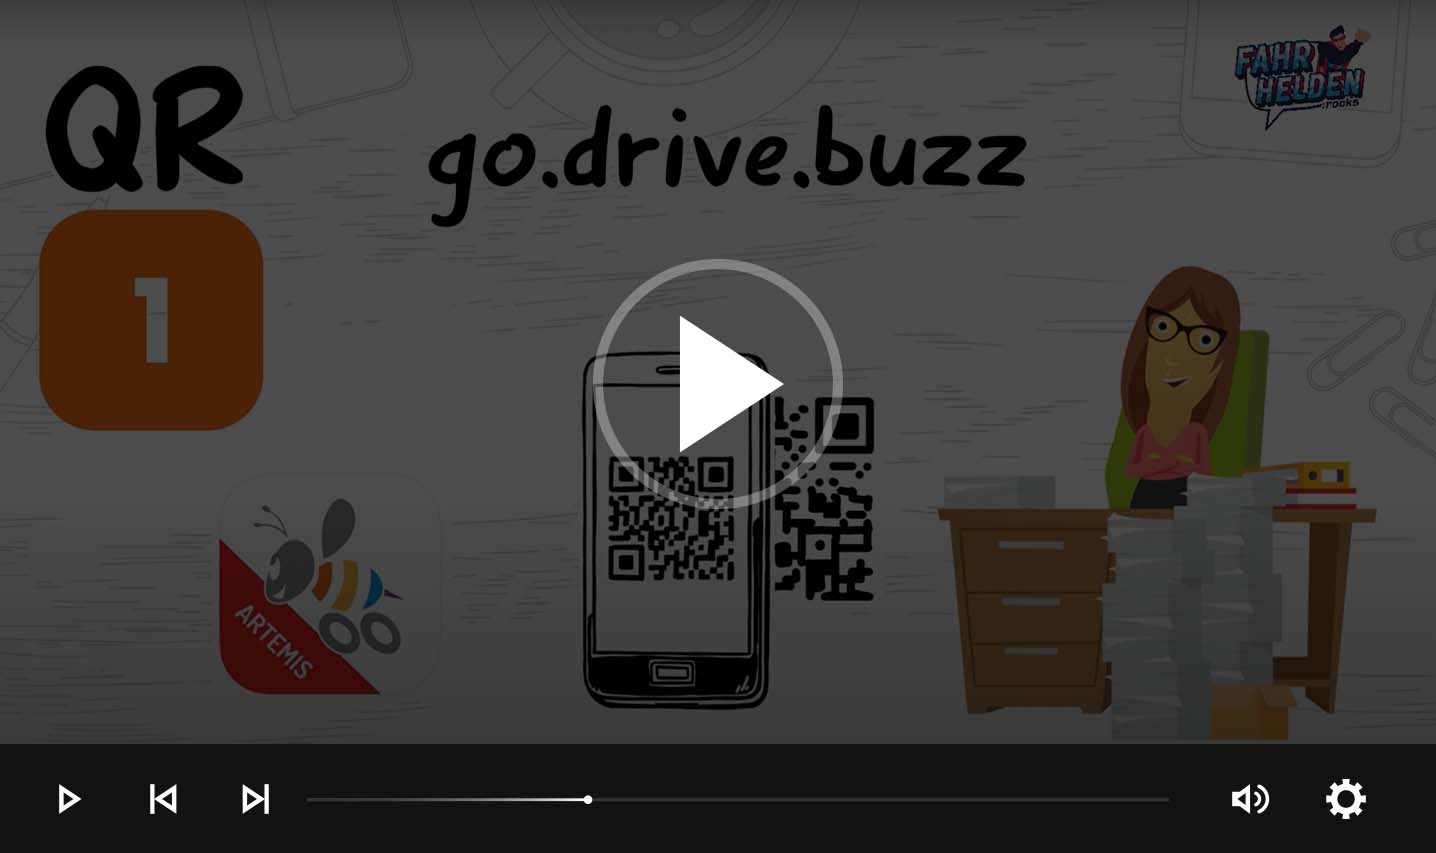 Anmeldung mit der drive.buzz App